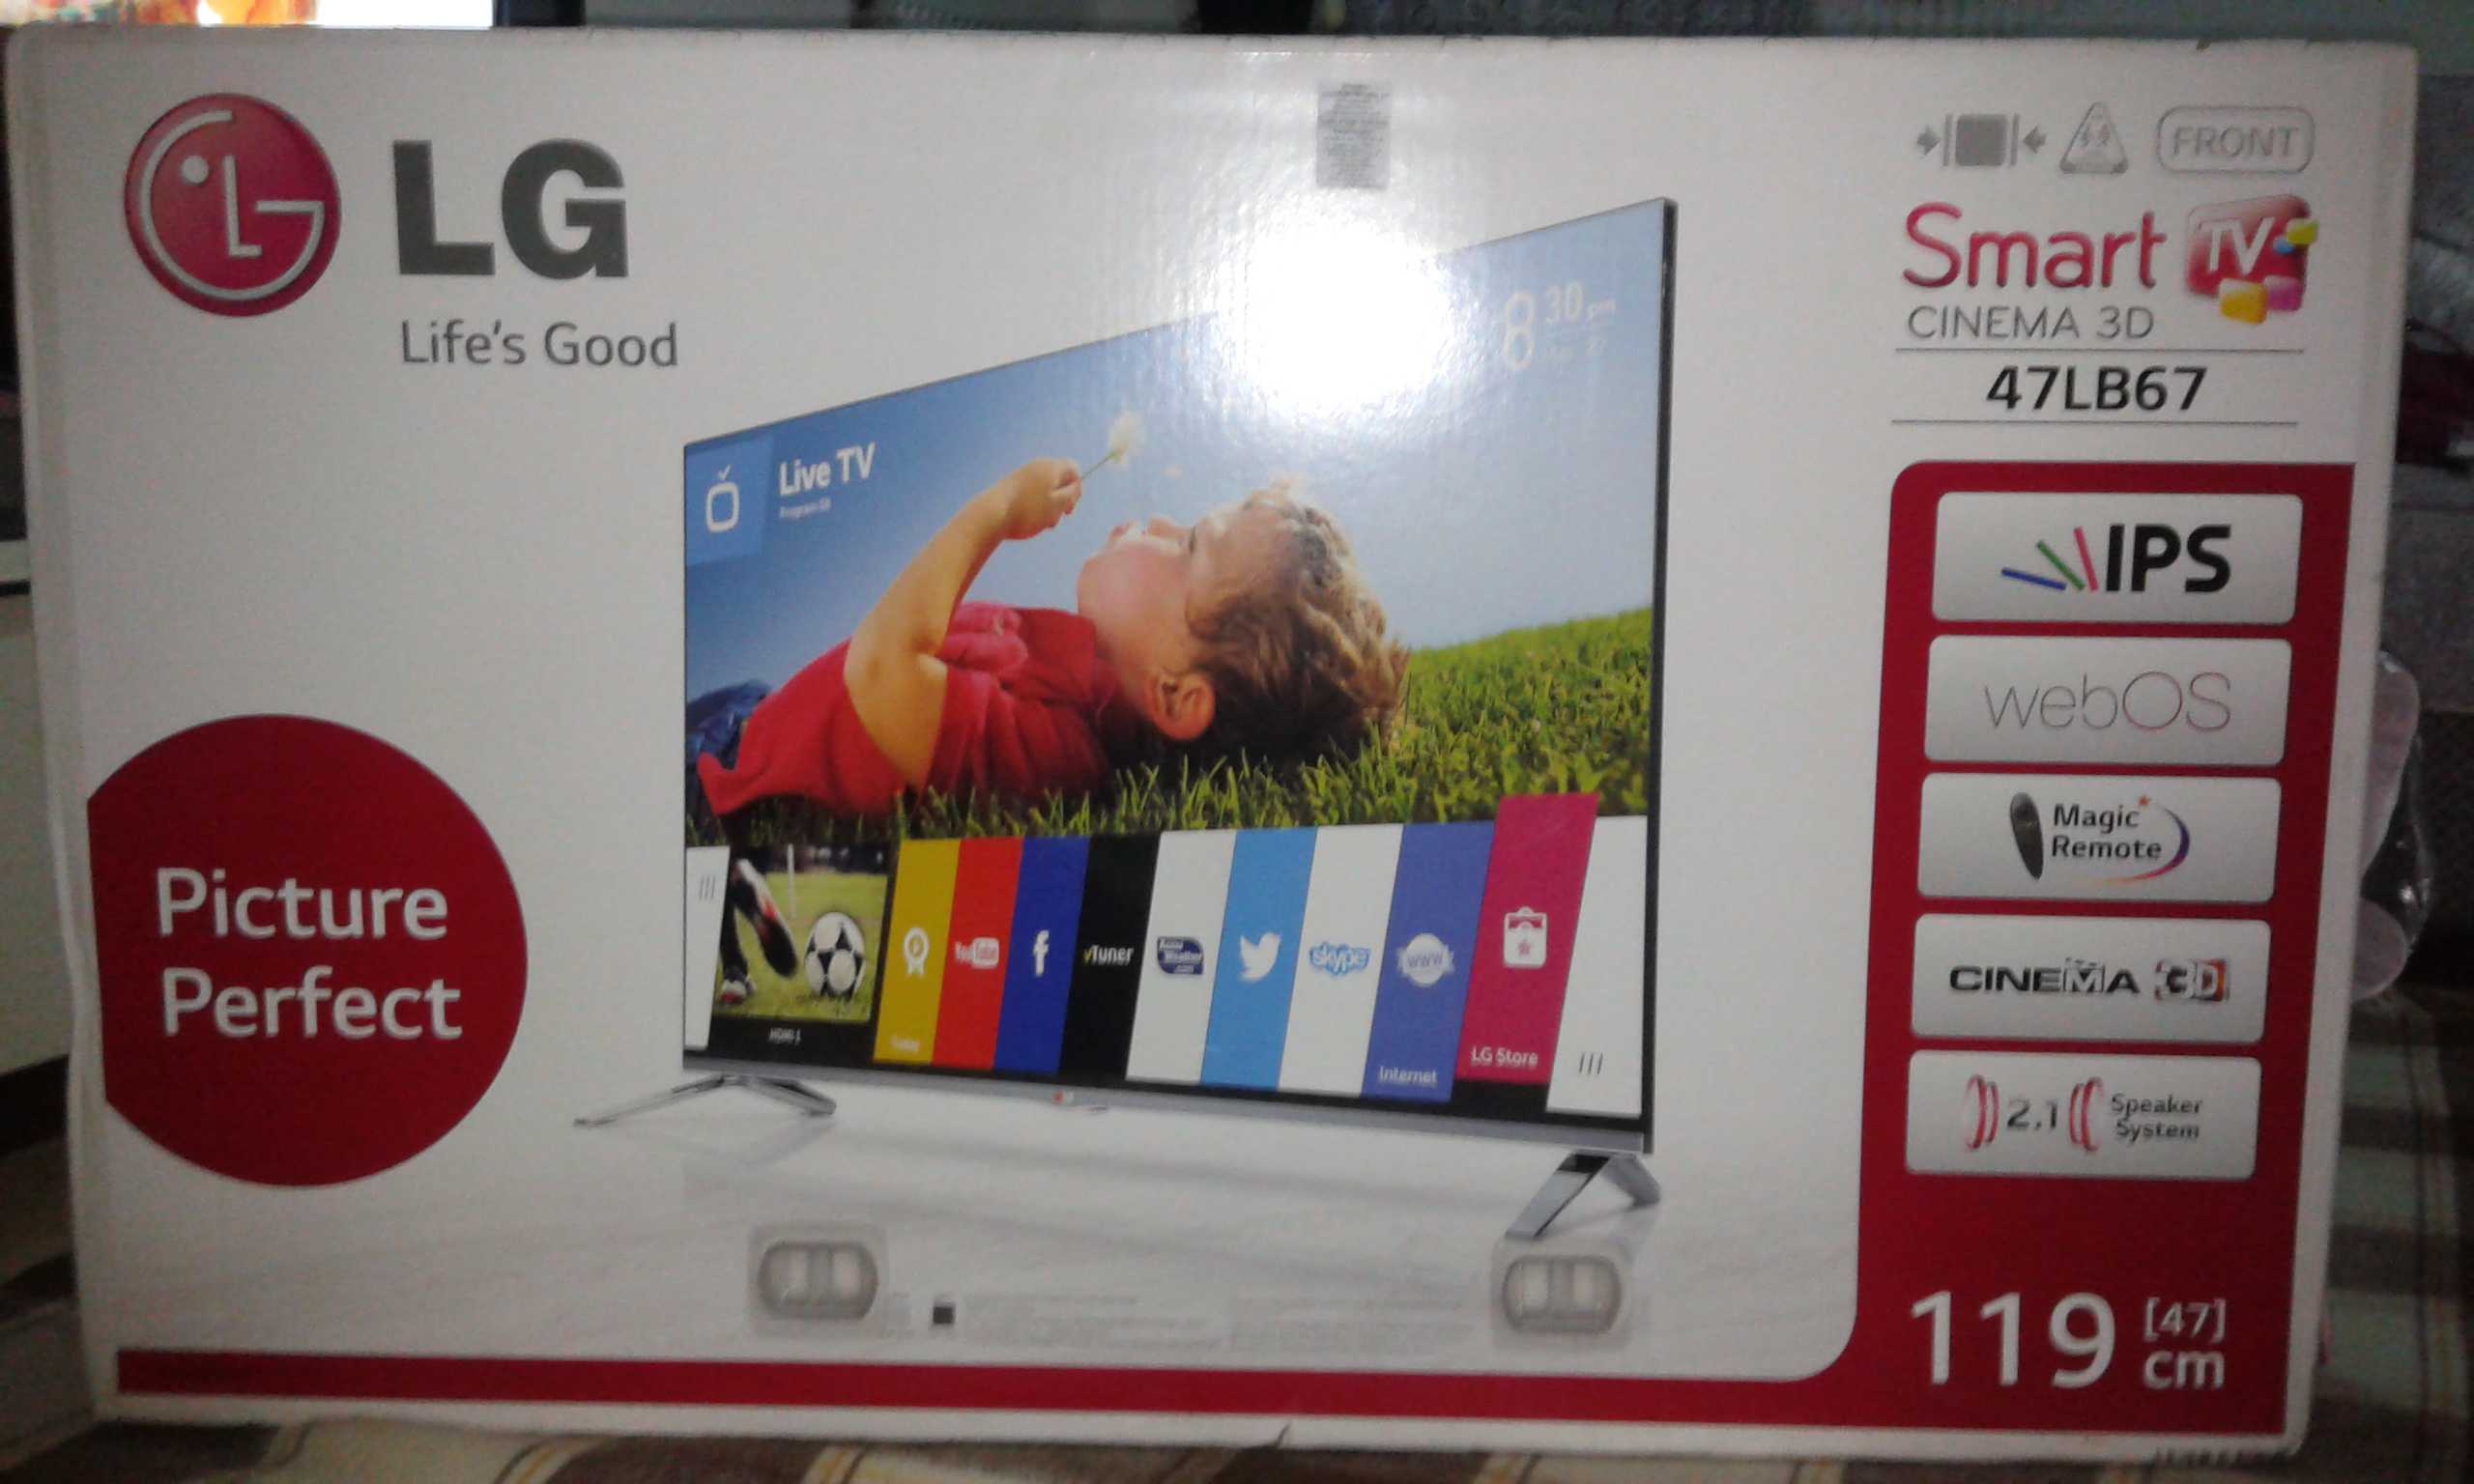 Телевизор LG 47LB630V - подробные характеристики обзоры видео фото Цены в интернет-магазинах где можно купить телевизор LG 47LB630V